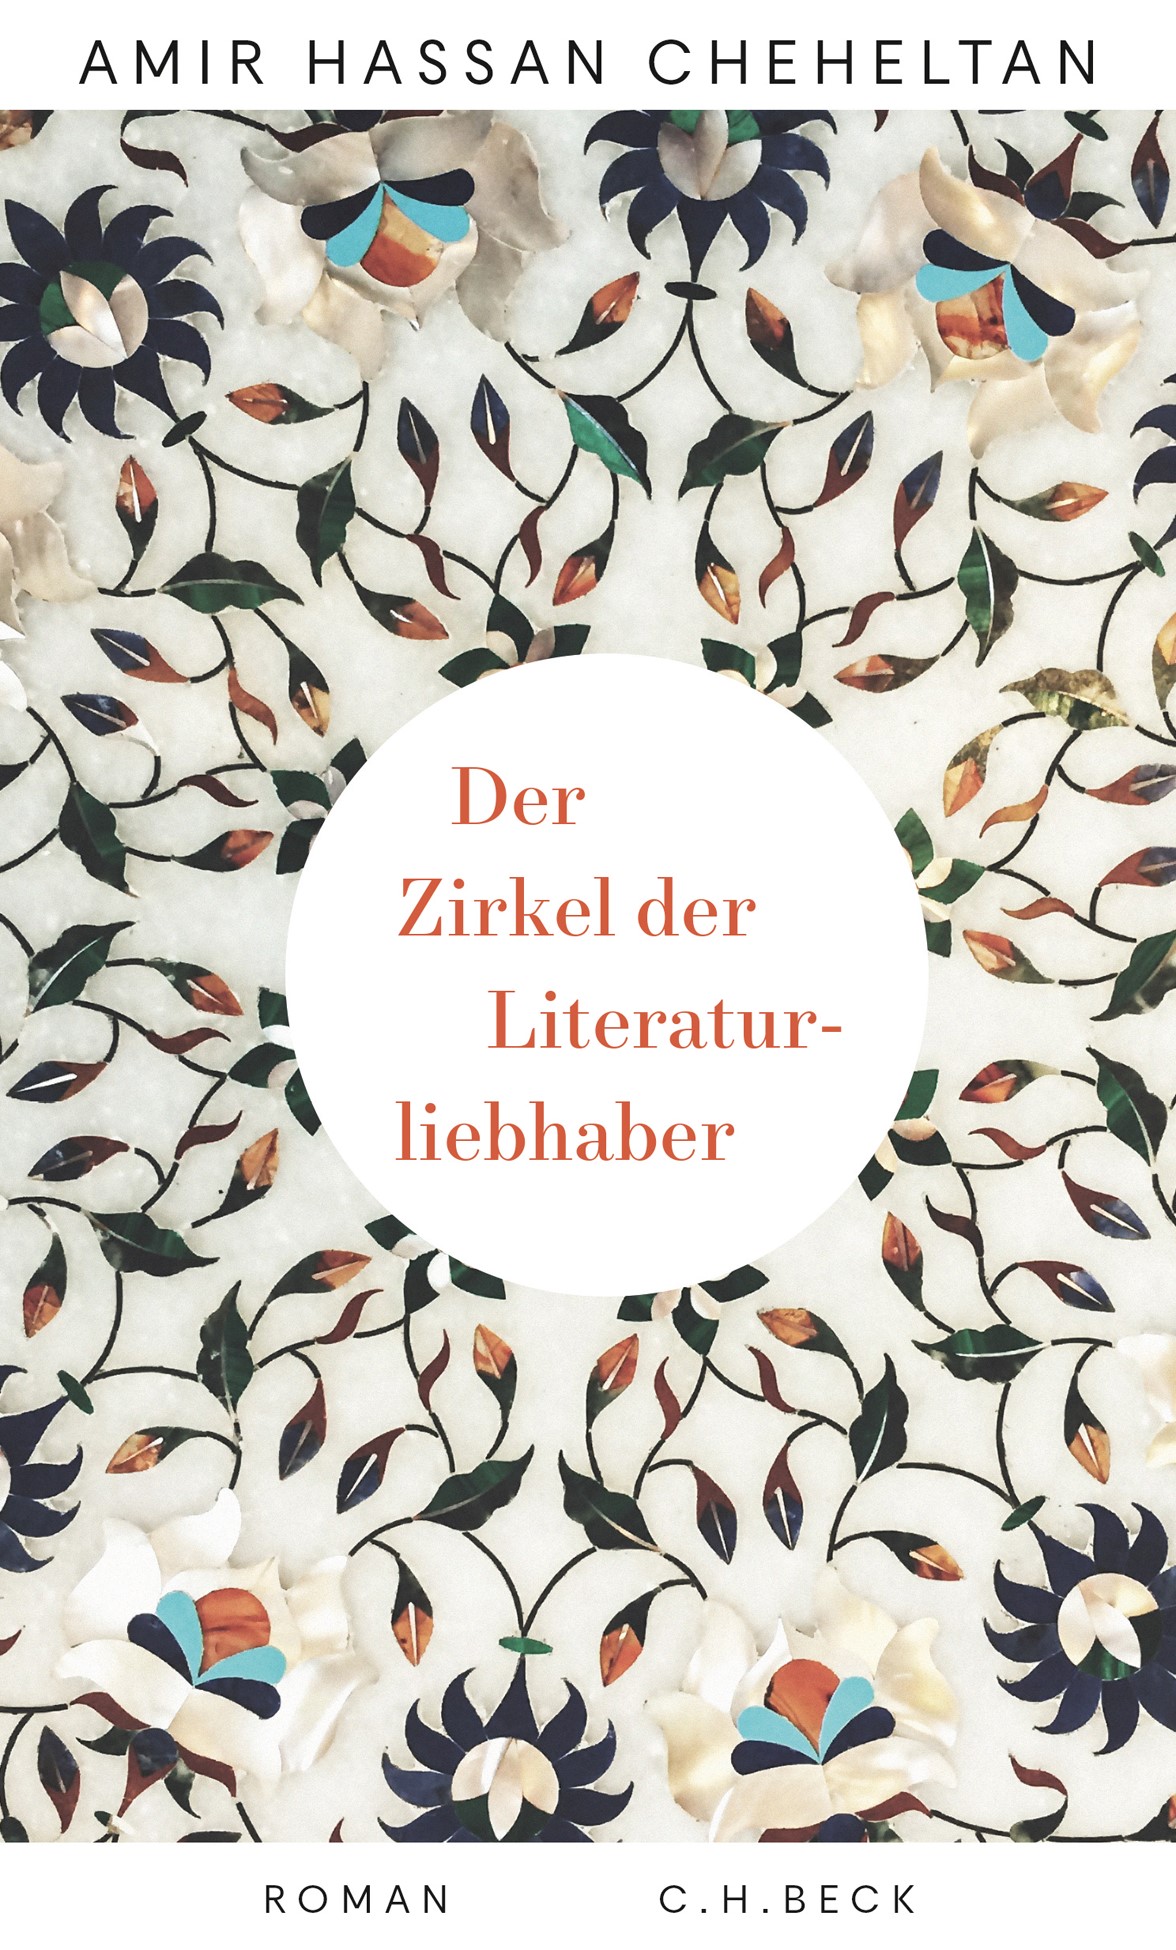 Cover of Amir Hassan Cheheltan's "Der Zirkel der Literaturliebhaber" (source: C. H. Beck)